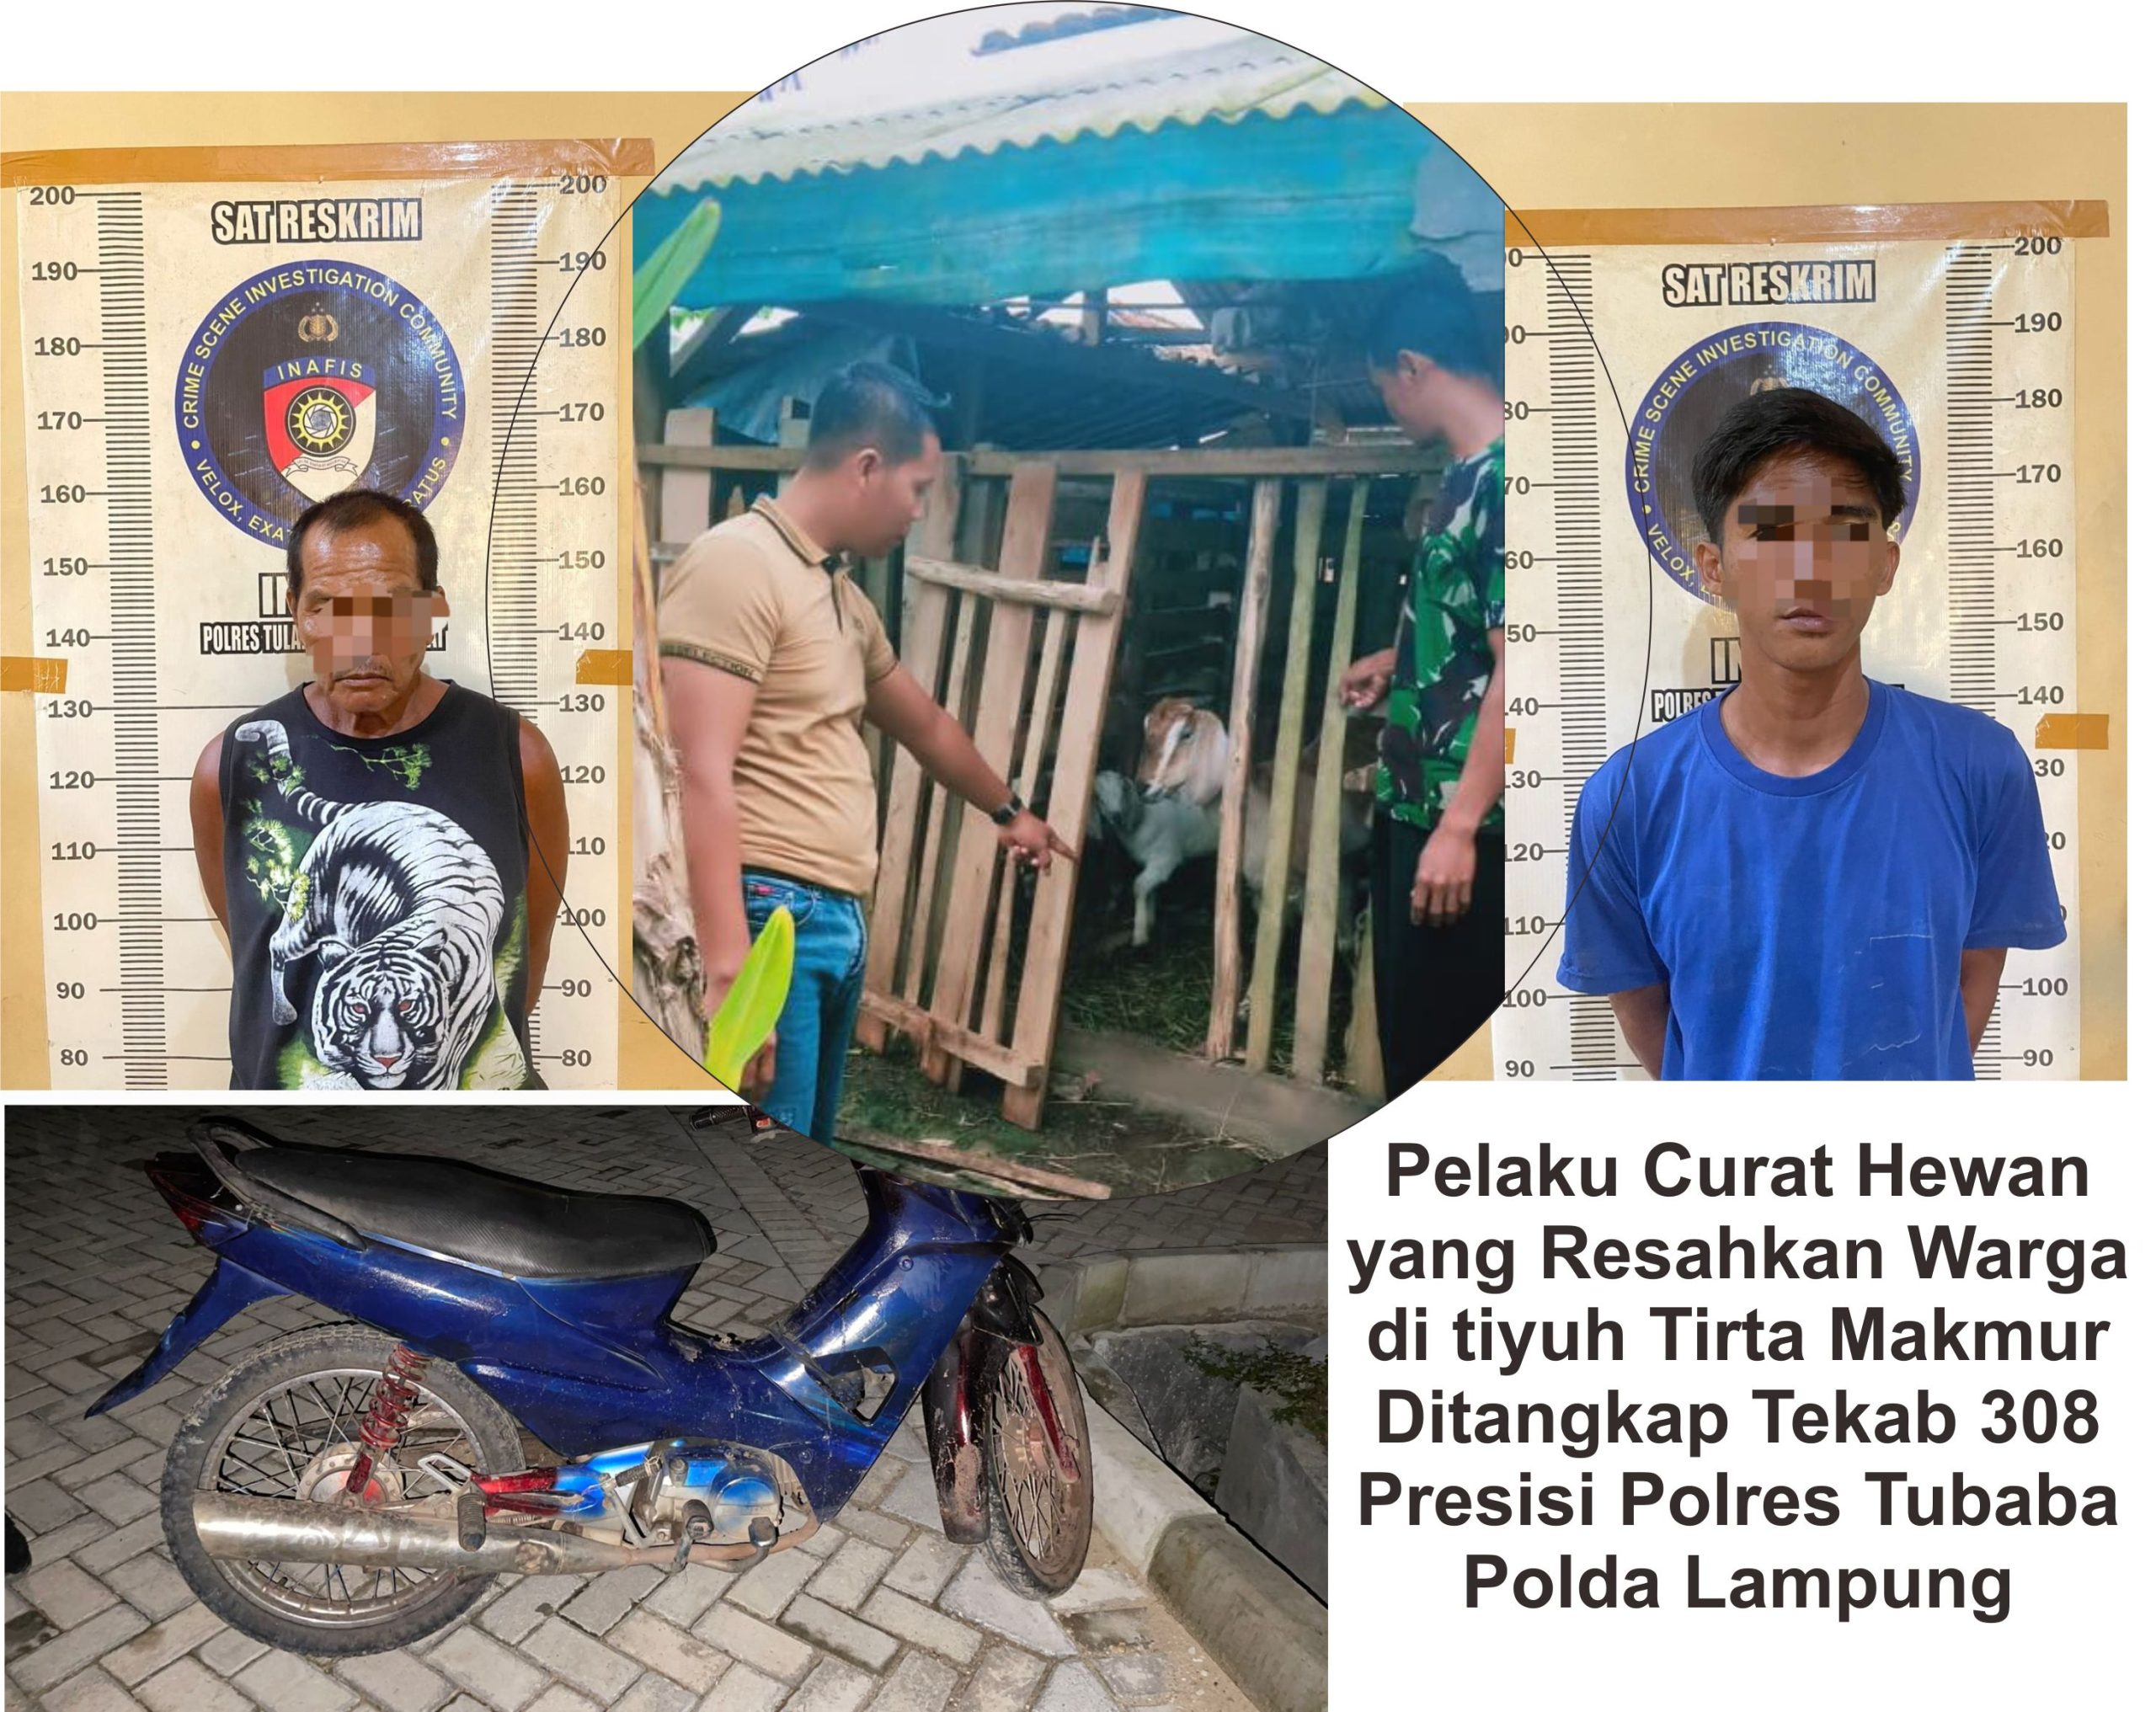 Pelaku Curat Hewan yang Resahkan Warga di tiyuh Tirta Makmur Ditangkap Tekab 308 Presisi Polres Tubaba Polda Lampung.